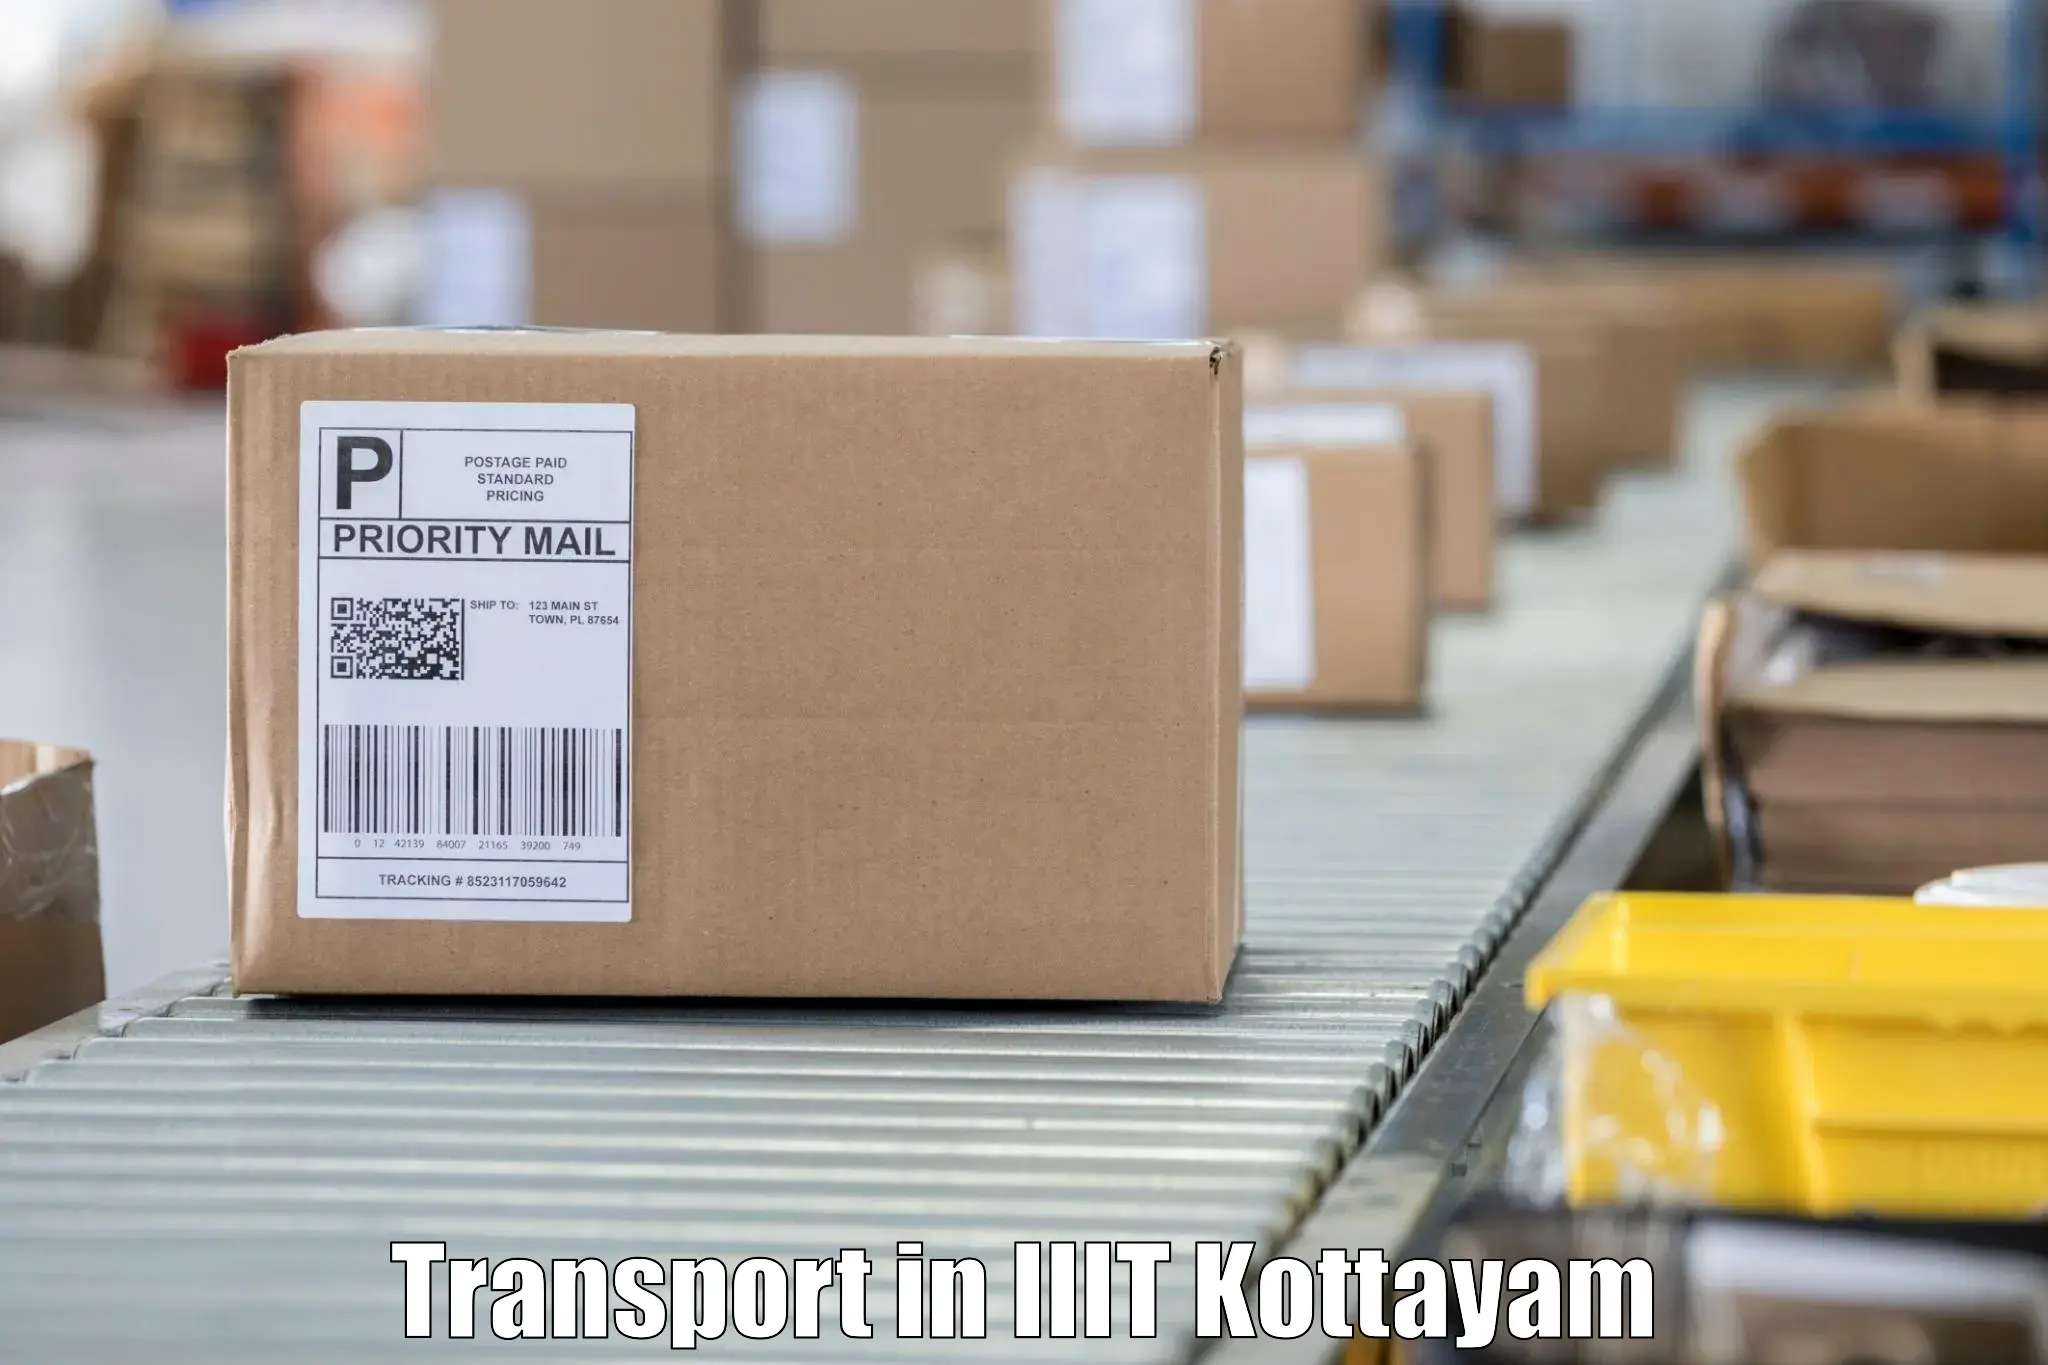 Cargo transport services in IIIT Kottayam